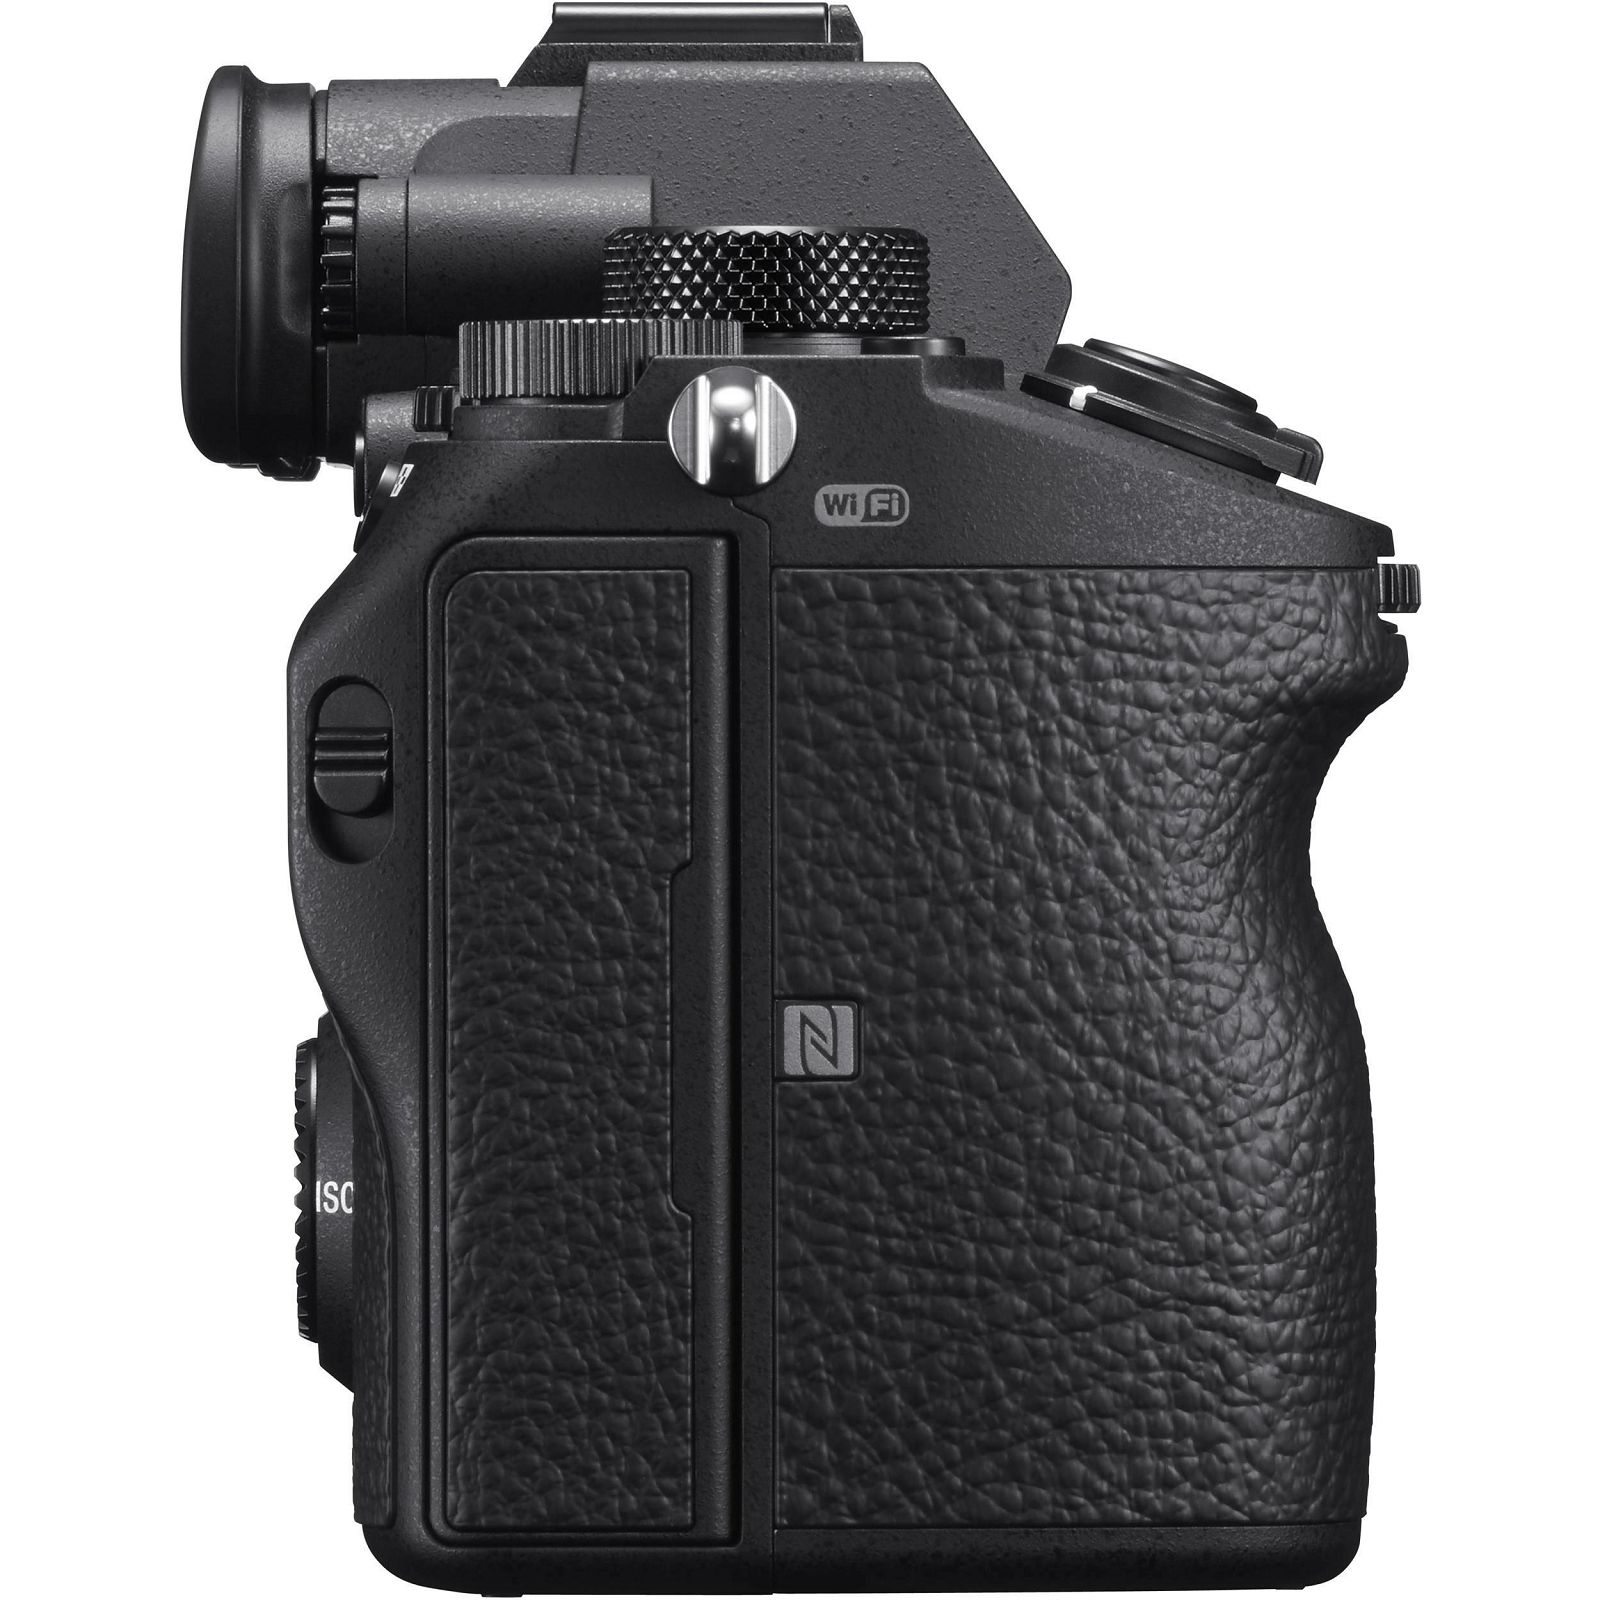 Sony Alpha a7 III + 24-105mm f/4 G OSS KIT Mirrorless Digital Camera bezrcalni digitalni fotoaparat i zoom objektiv SEL24105G FE 24-105mm f4 a7III  (ILCE7M3GBDI.EU)